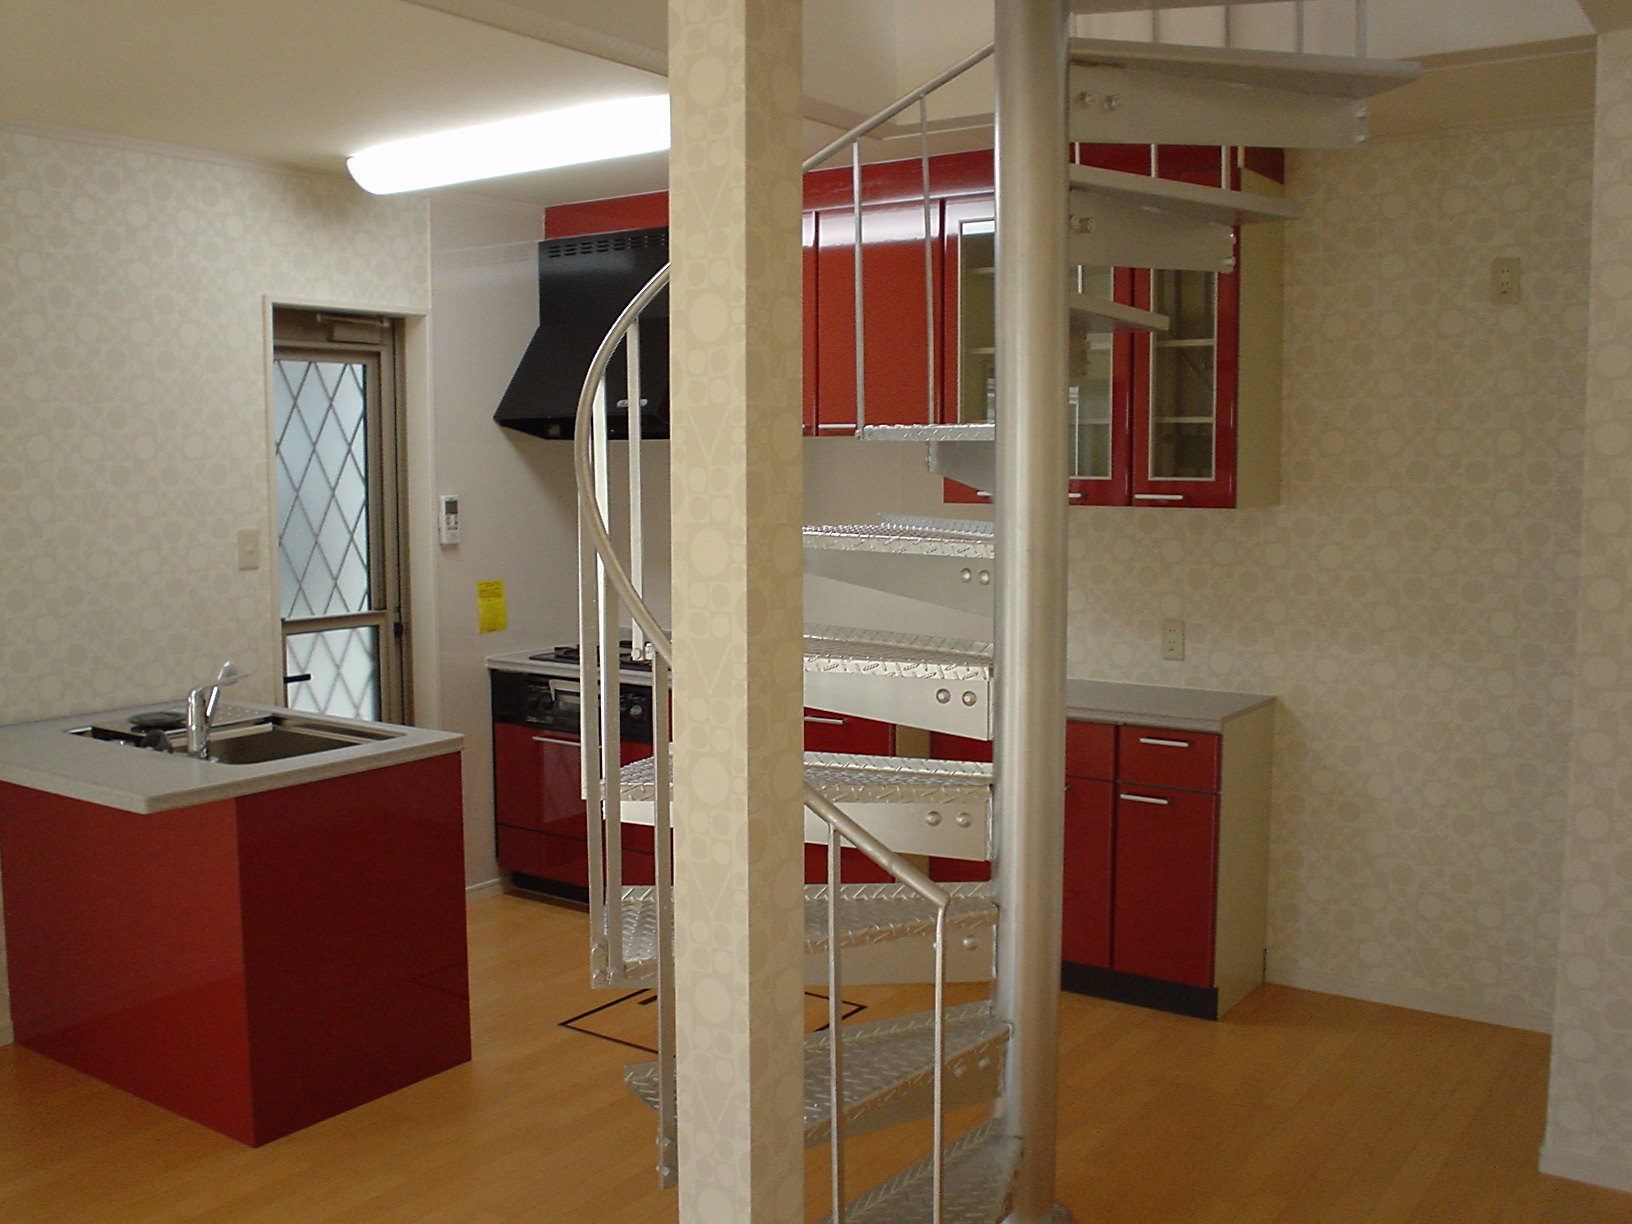 アイランドキッチンを原色カラー赤で、らせん階段はシルバー色に